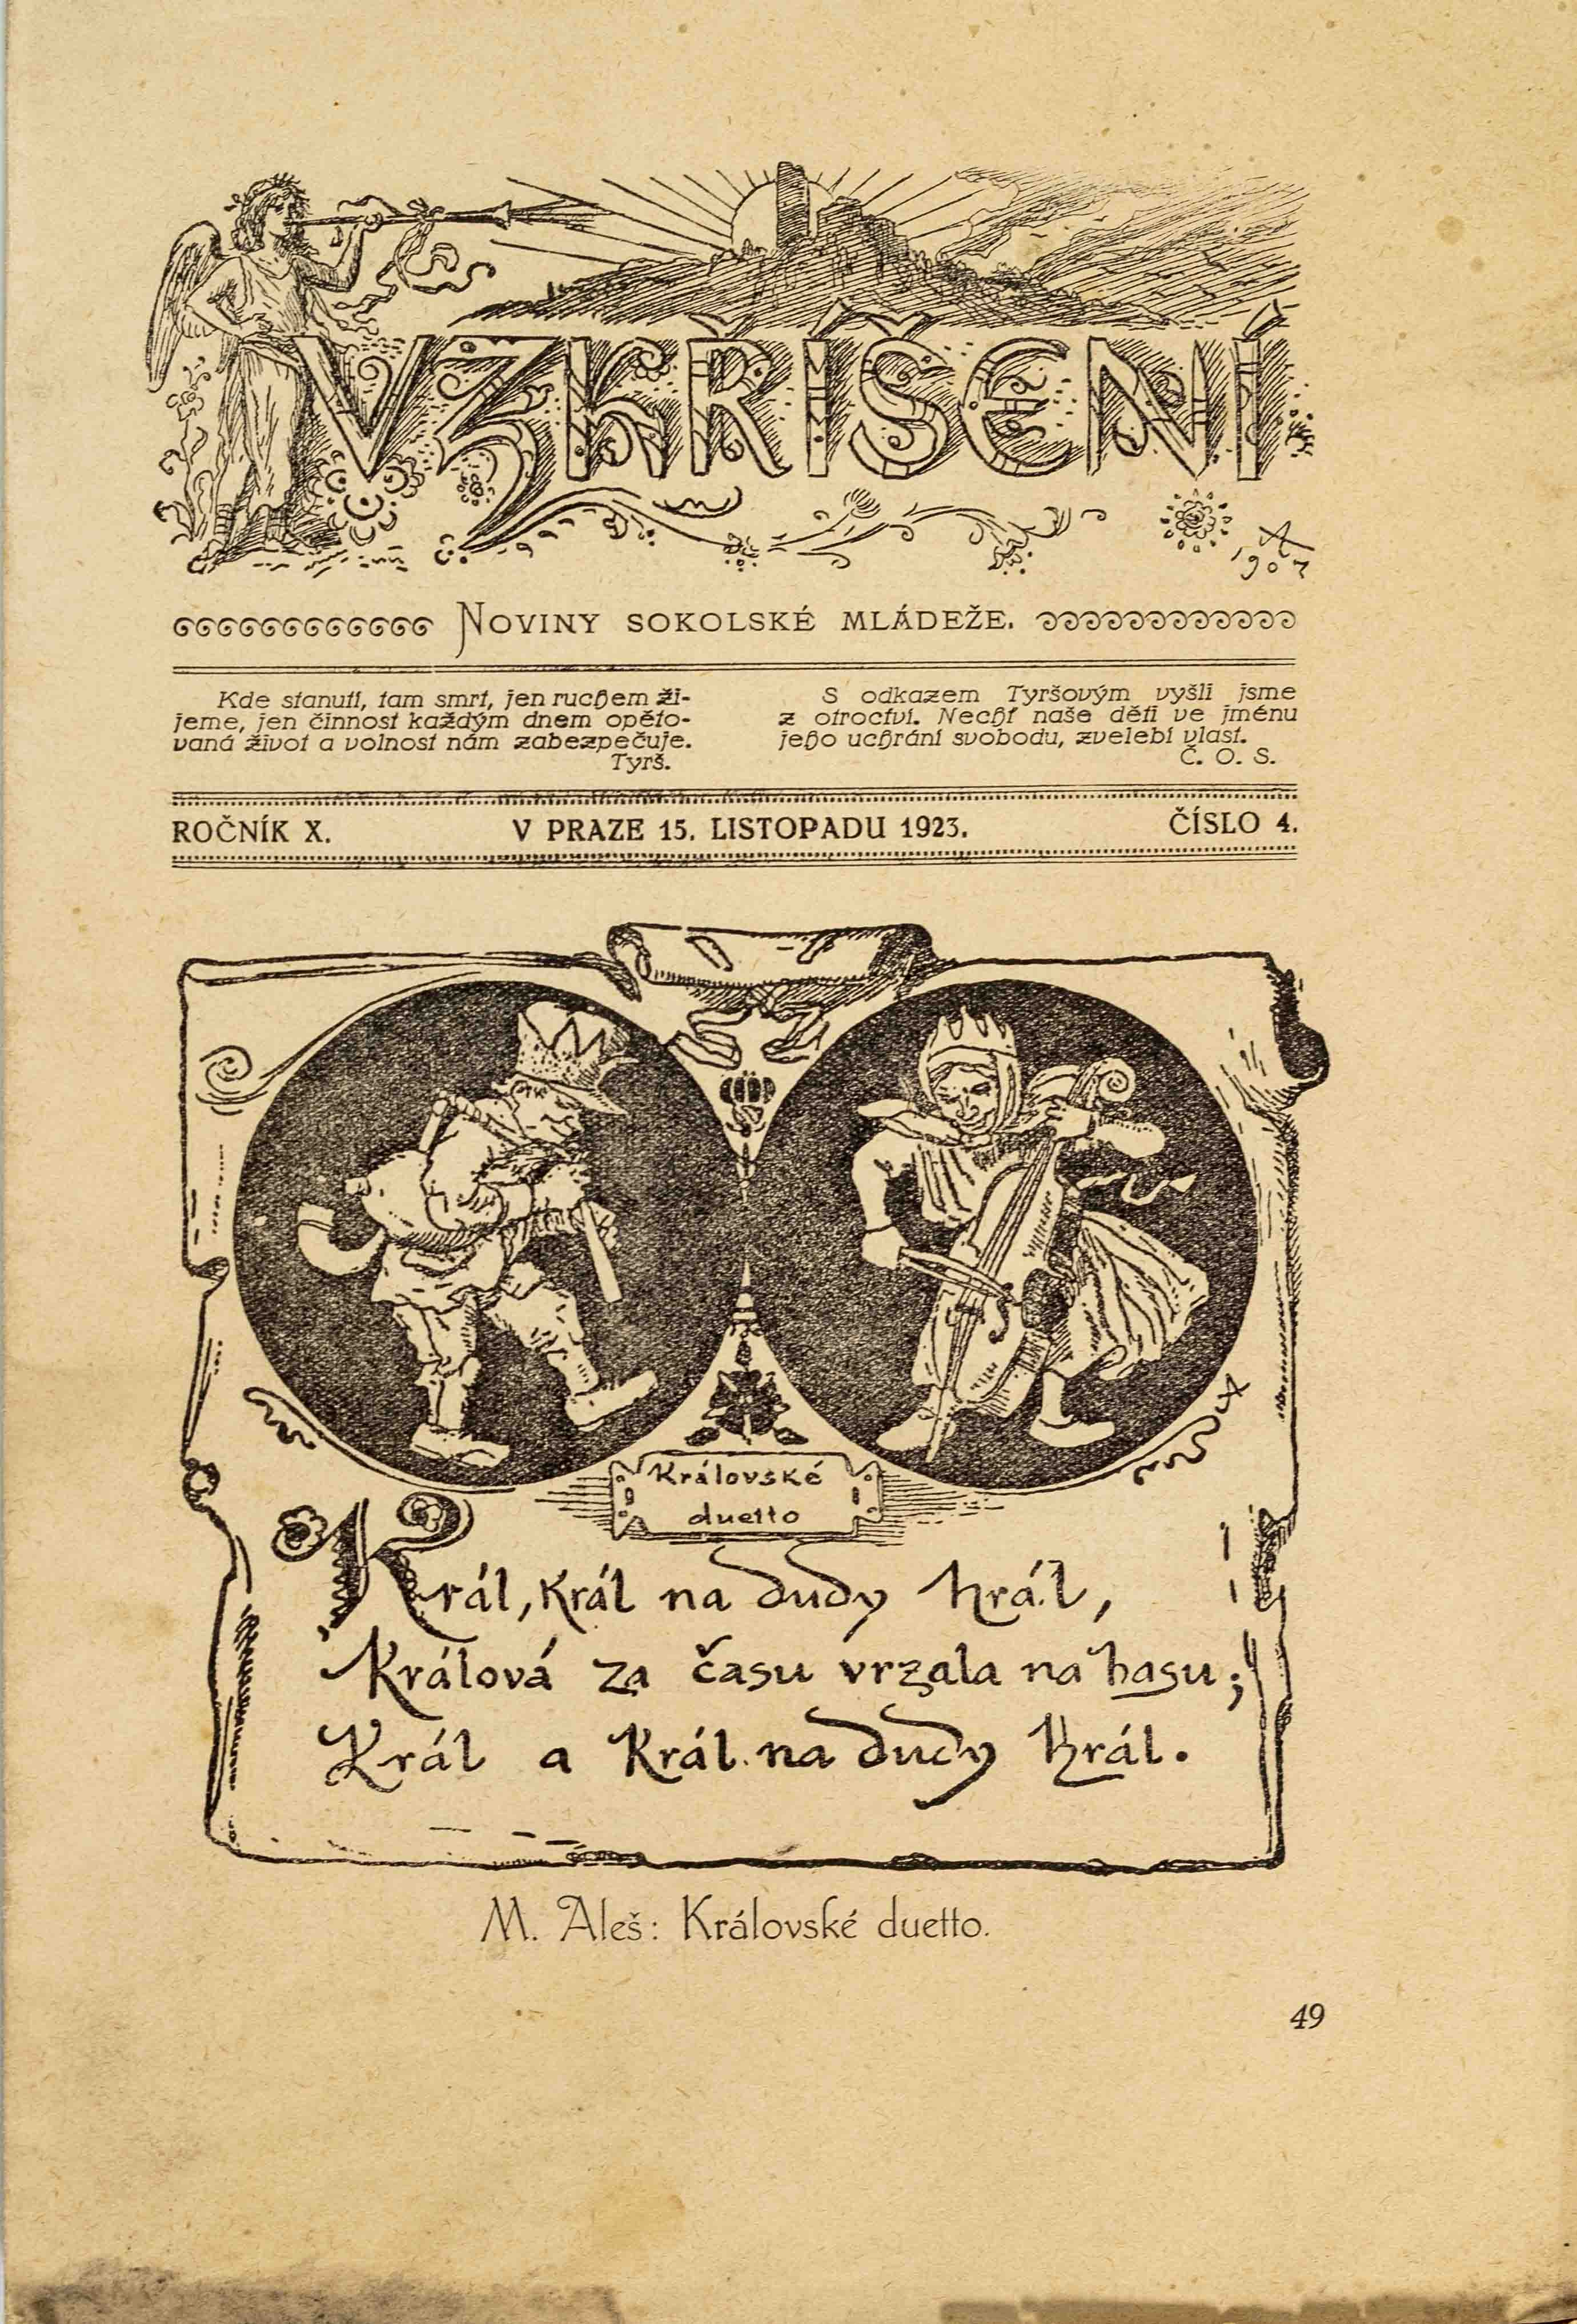 Noviny Vzkříšení - Sokolské mládeže, Listopad 1923, č. 4